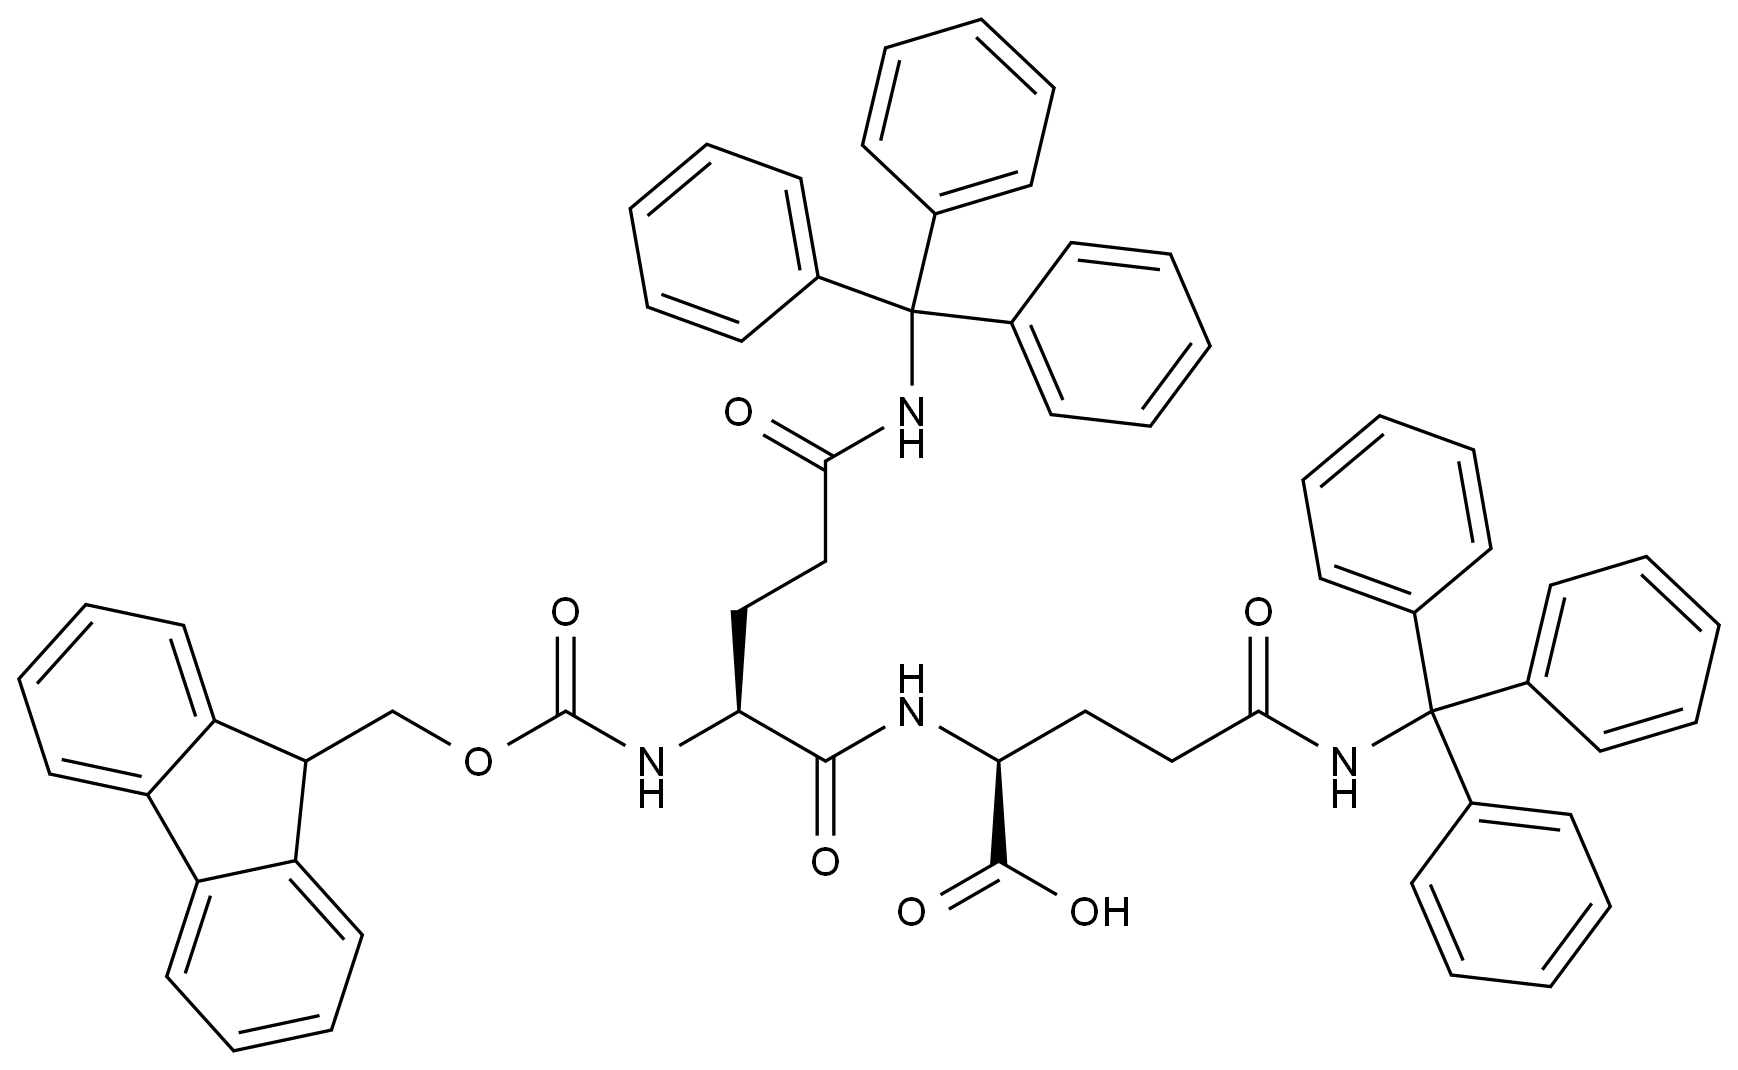 Fmoc-N-三苯甲基-L-谷氨酰胺-N'-三苯甲基-L-谷氨酰胺